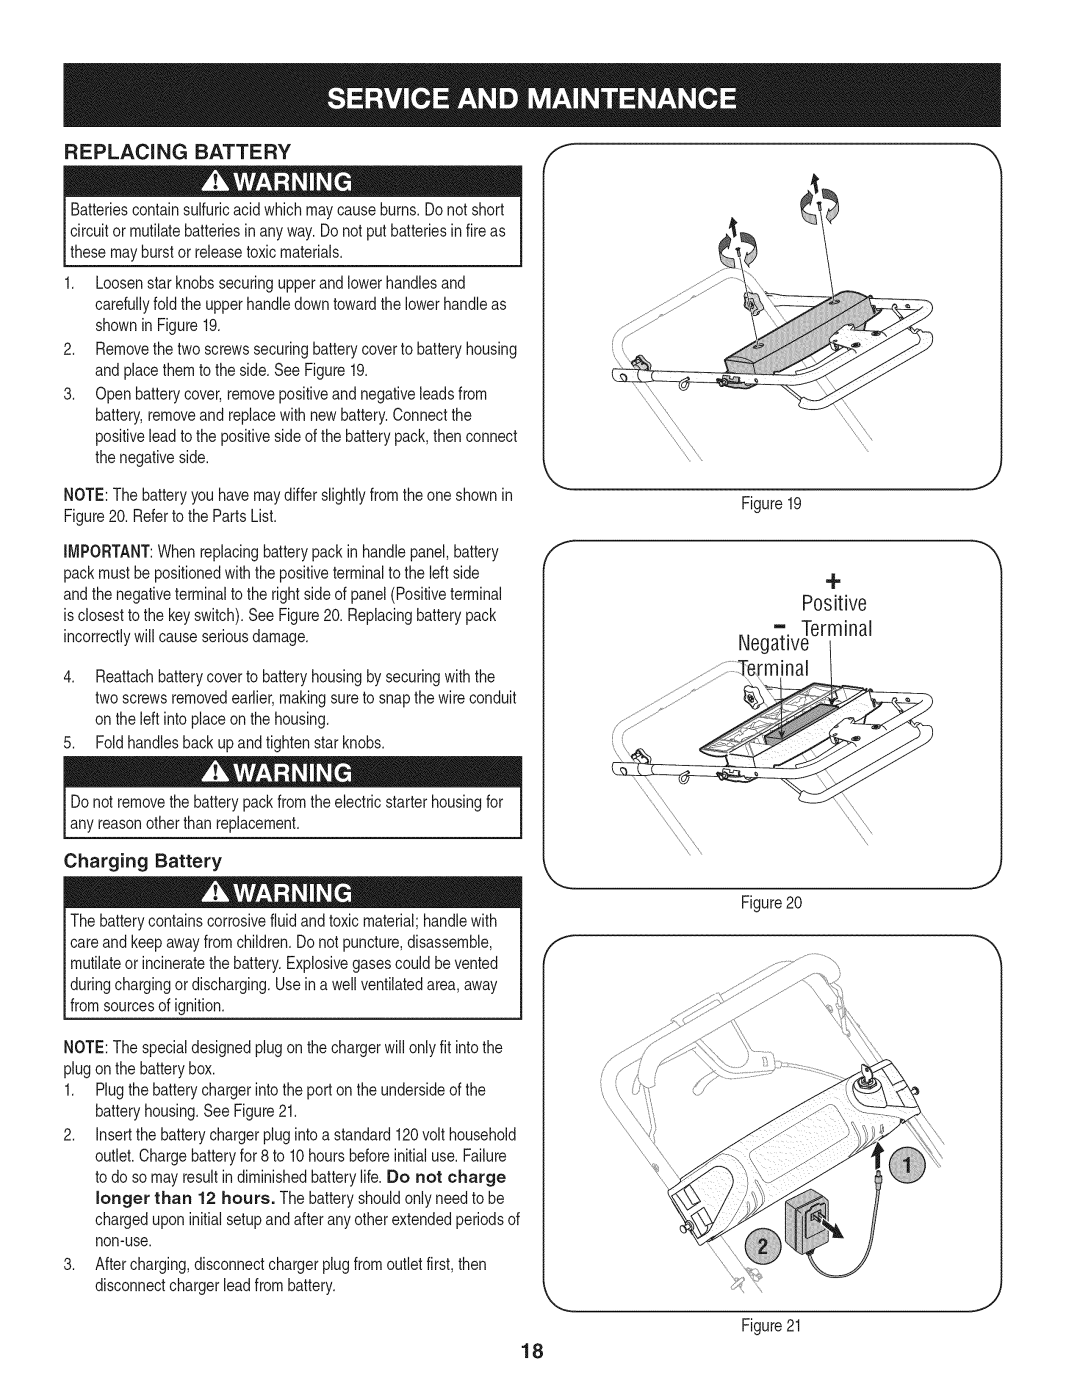 Craftsman 247.887210 manual Replacing Battery, + Positive Terminal Negative rminal 